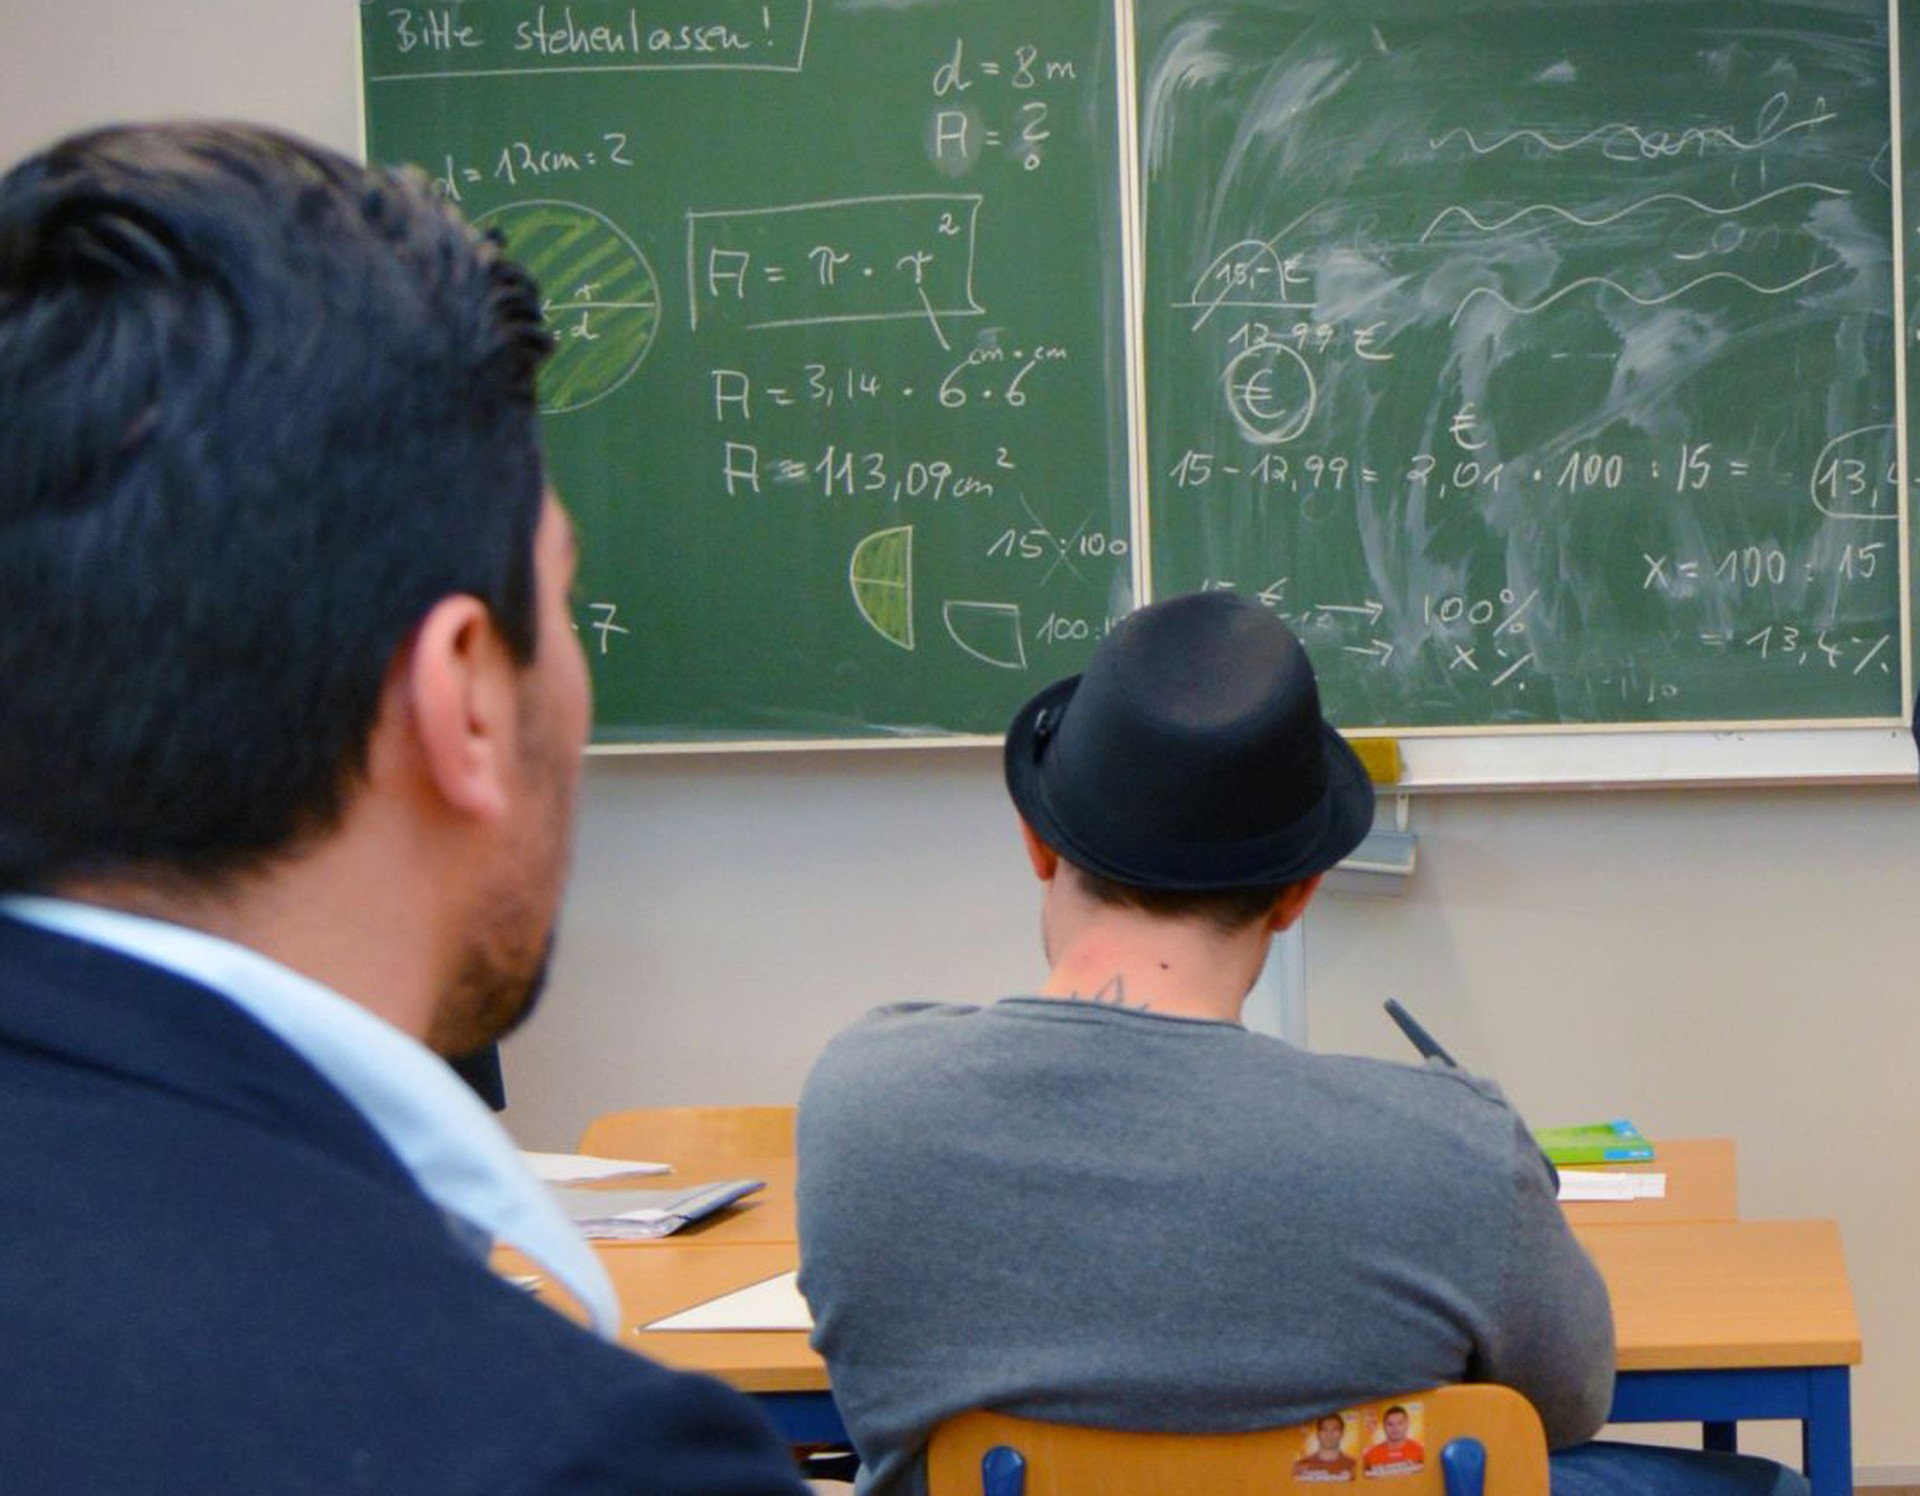 Zwei junge Männer sitzen auf Stühlen an Tischen vor einer mit mathematischen Formeln beschriebenen Tafel. (Bild: LWL/Hannig)